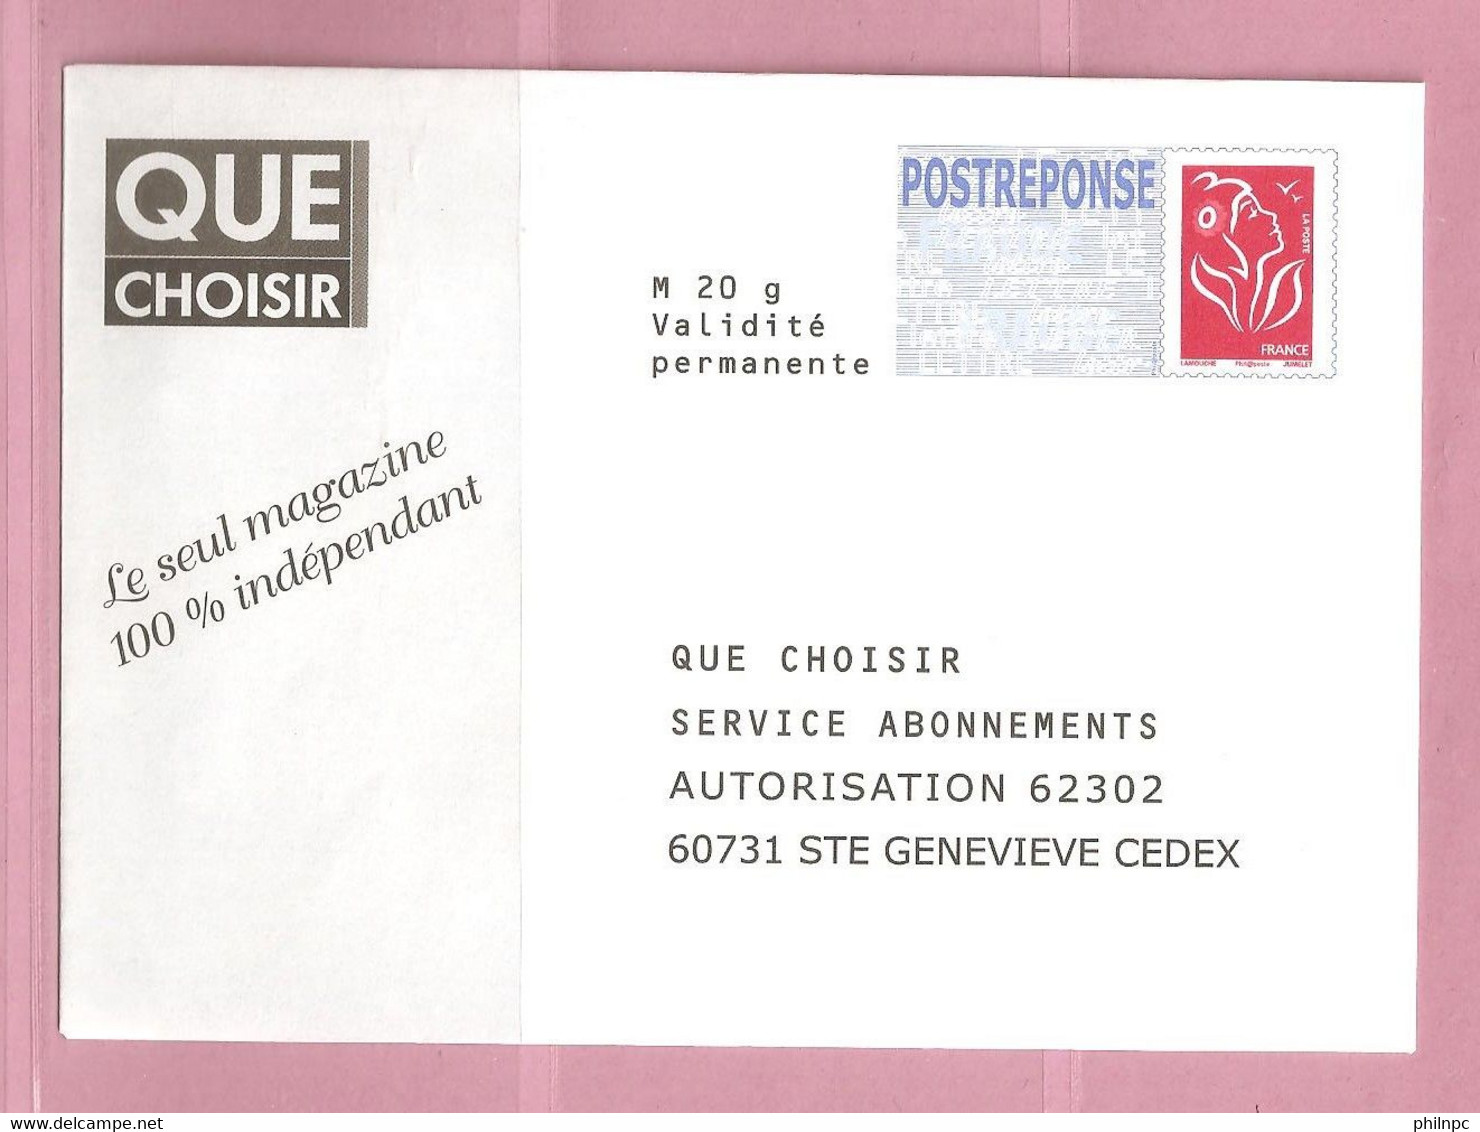 France, Prêt à Poster Réponse, 3734A, Postréponse, Que Choisir, Marianne De Lamouche - PAP : Antwoord /Lamouche